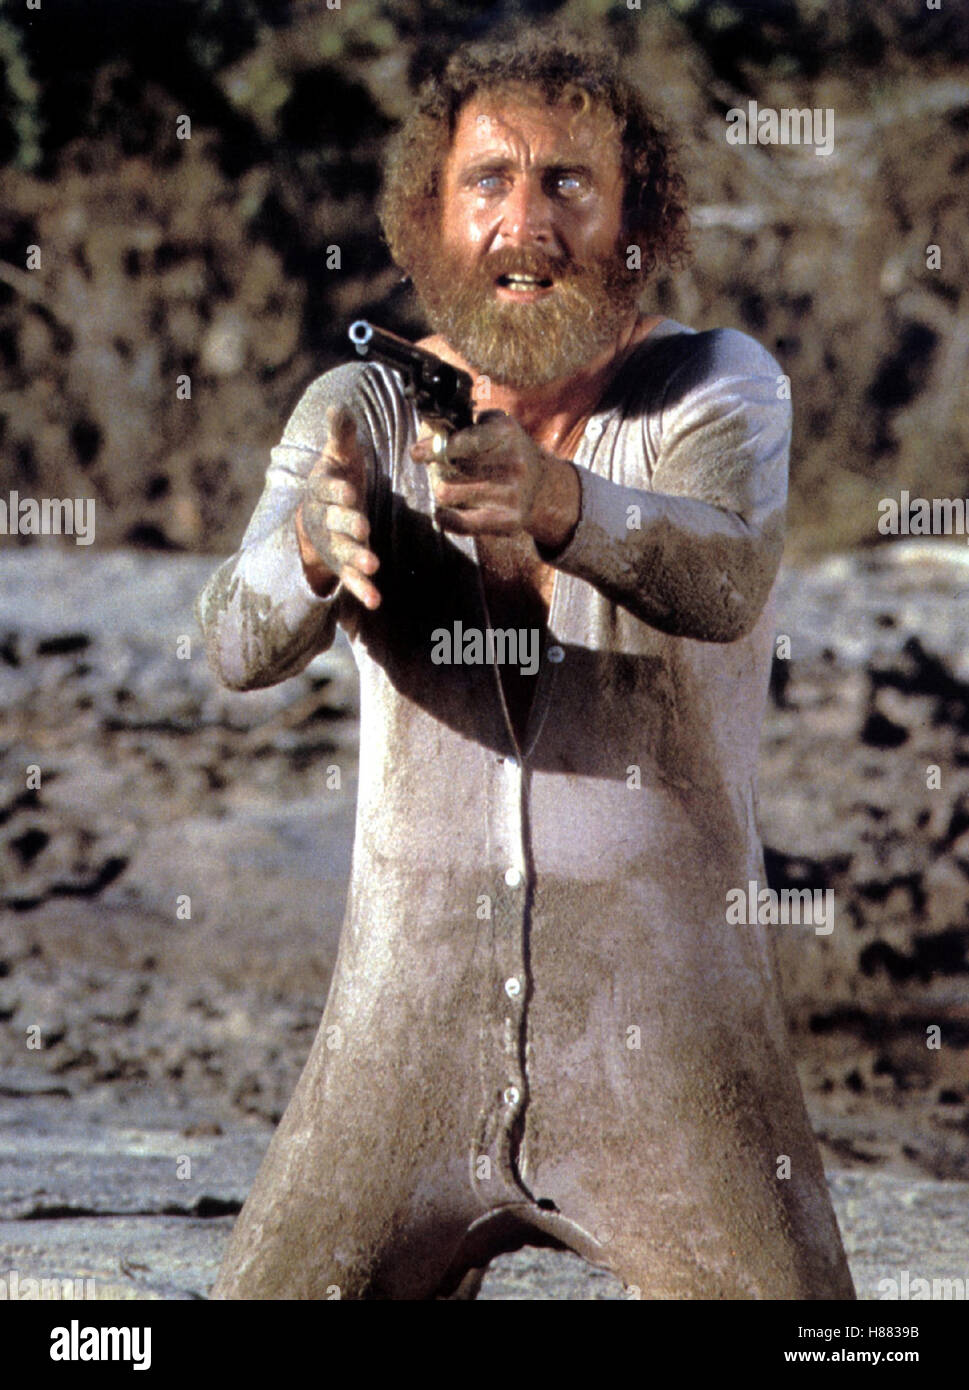 Ein Rabbi im Wilden Westen / Frisco Kid, (THE FRISCO KID) USA 1979, Regie:  Robert Aldrich, GENE WILDER, Stichwort: Waffe, Revolver, Bart, Unterwäsche  Stock Photo - Alamy